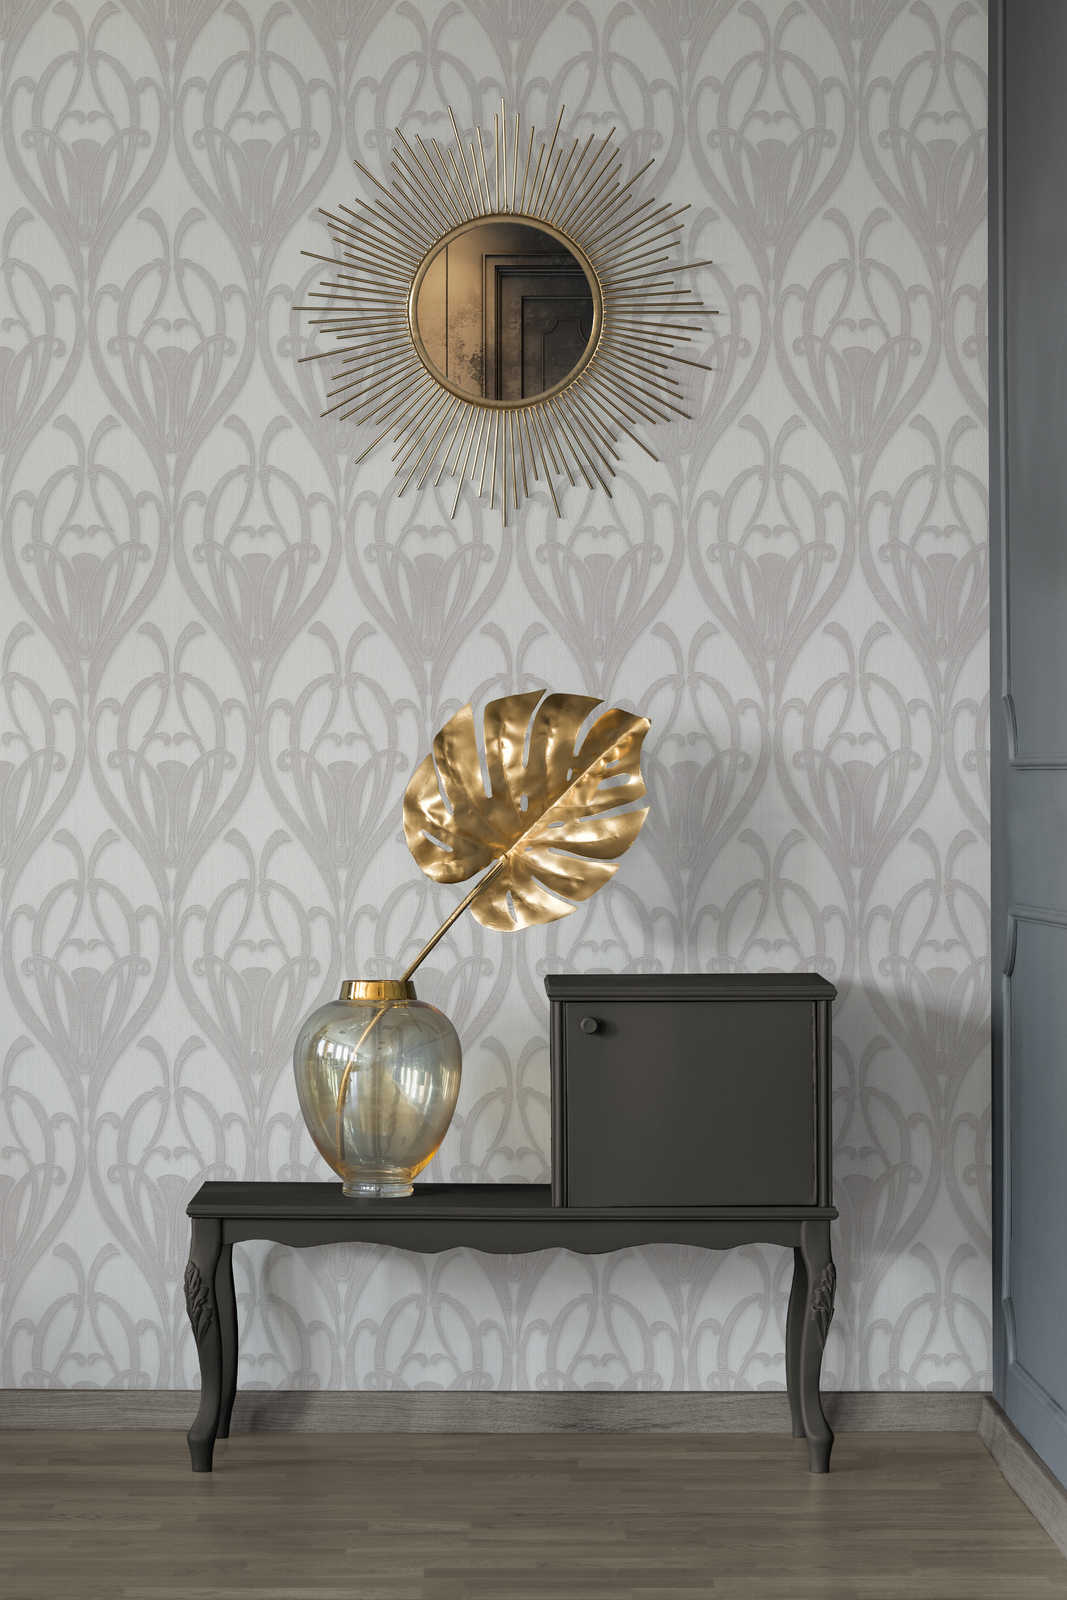             Ornamentbehang met Art Deco patroon & textielstructuur
        